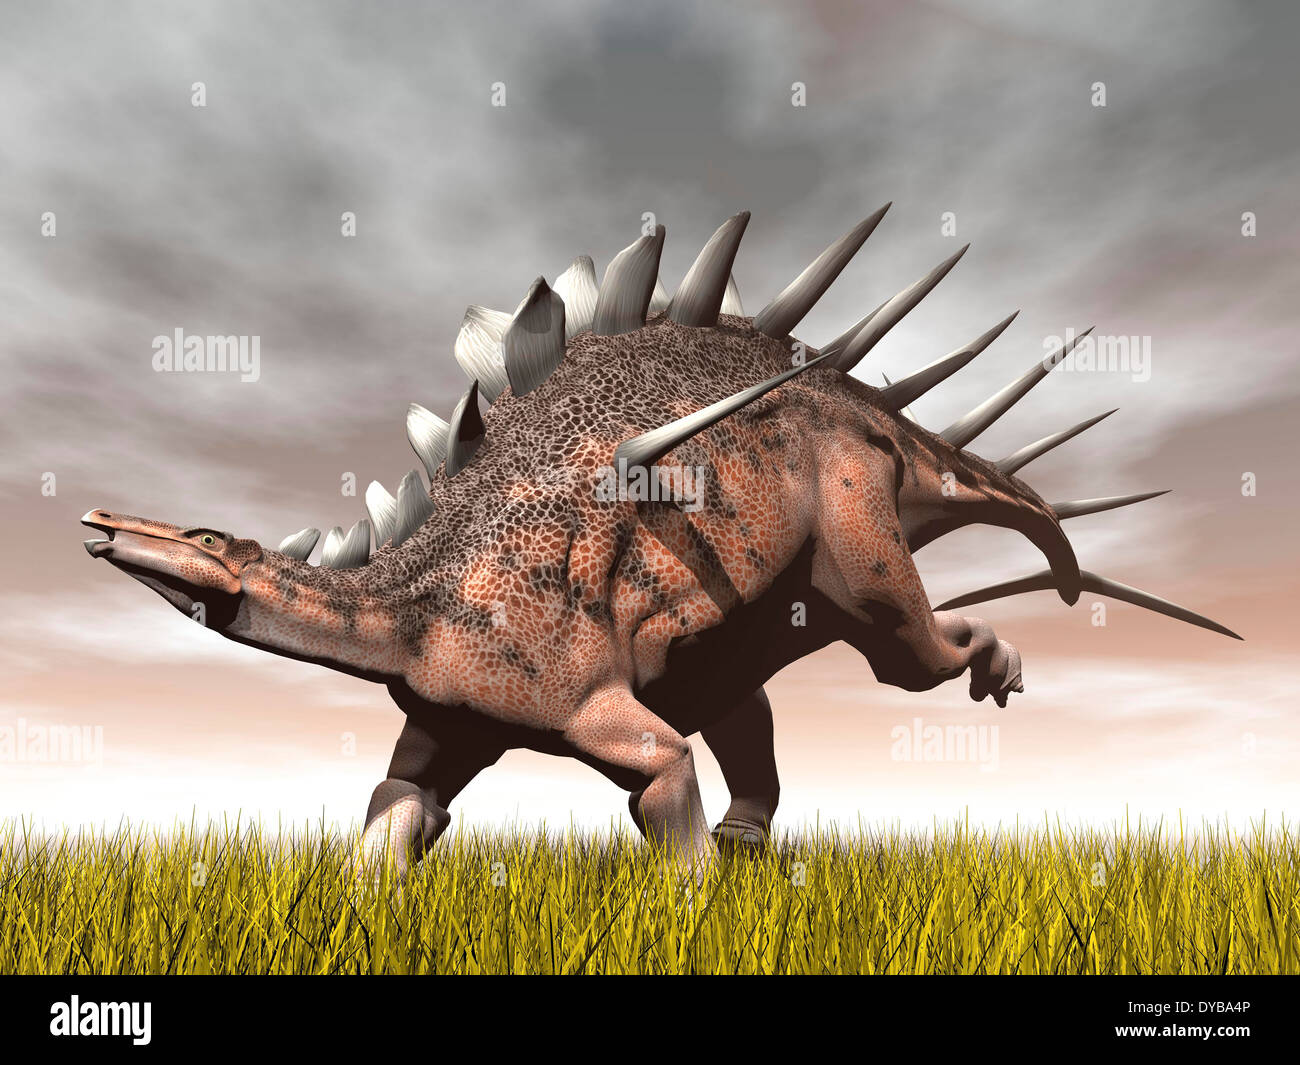 Kentrosaurus dinosaur running on the yellow grass. Stock Photo